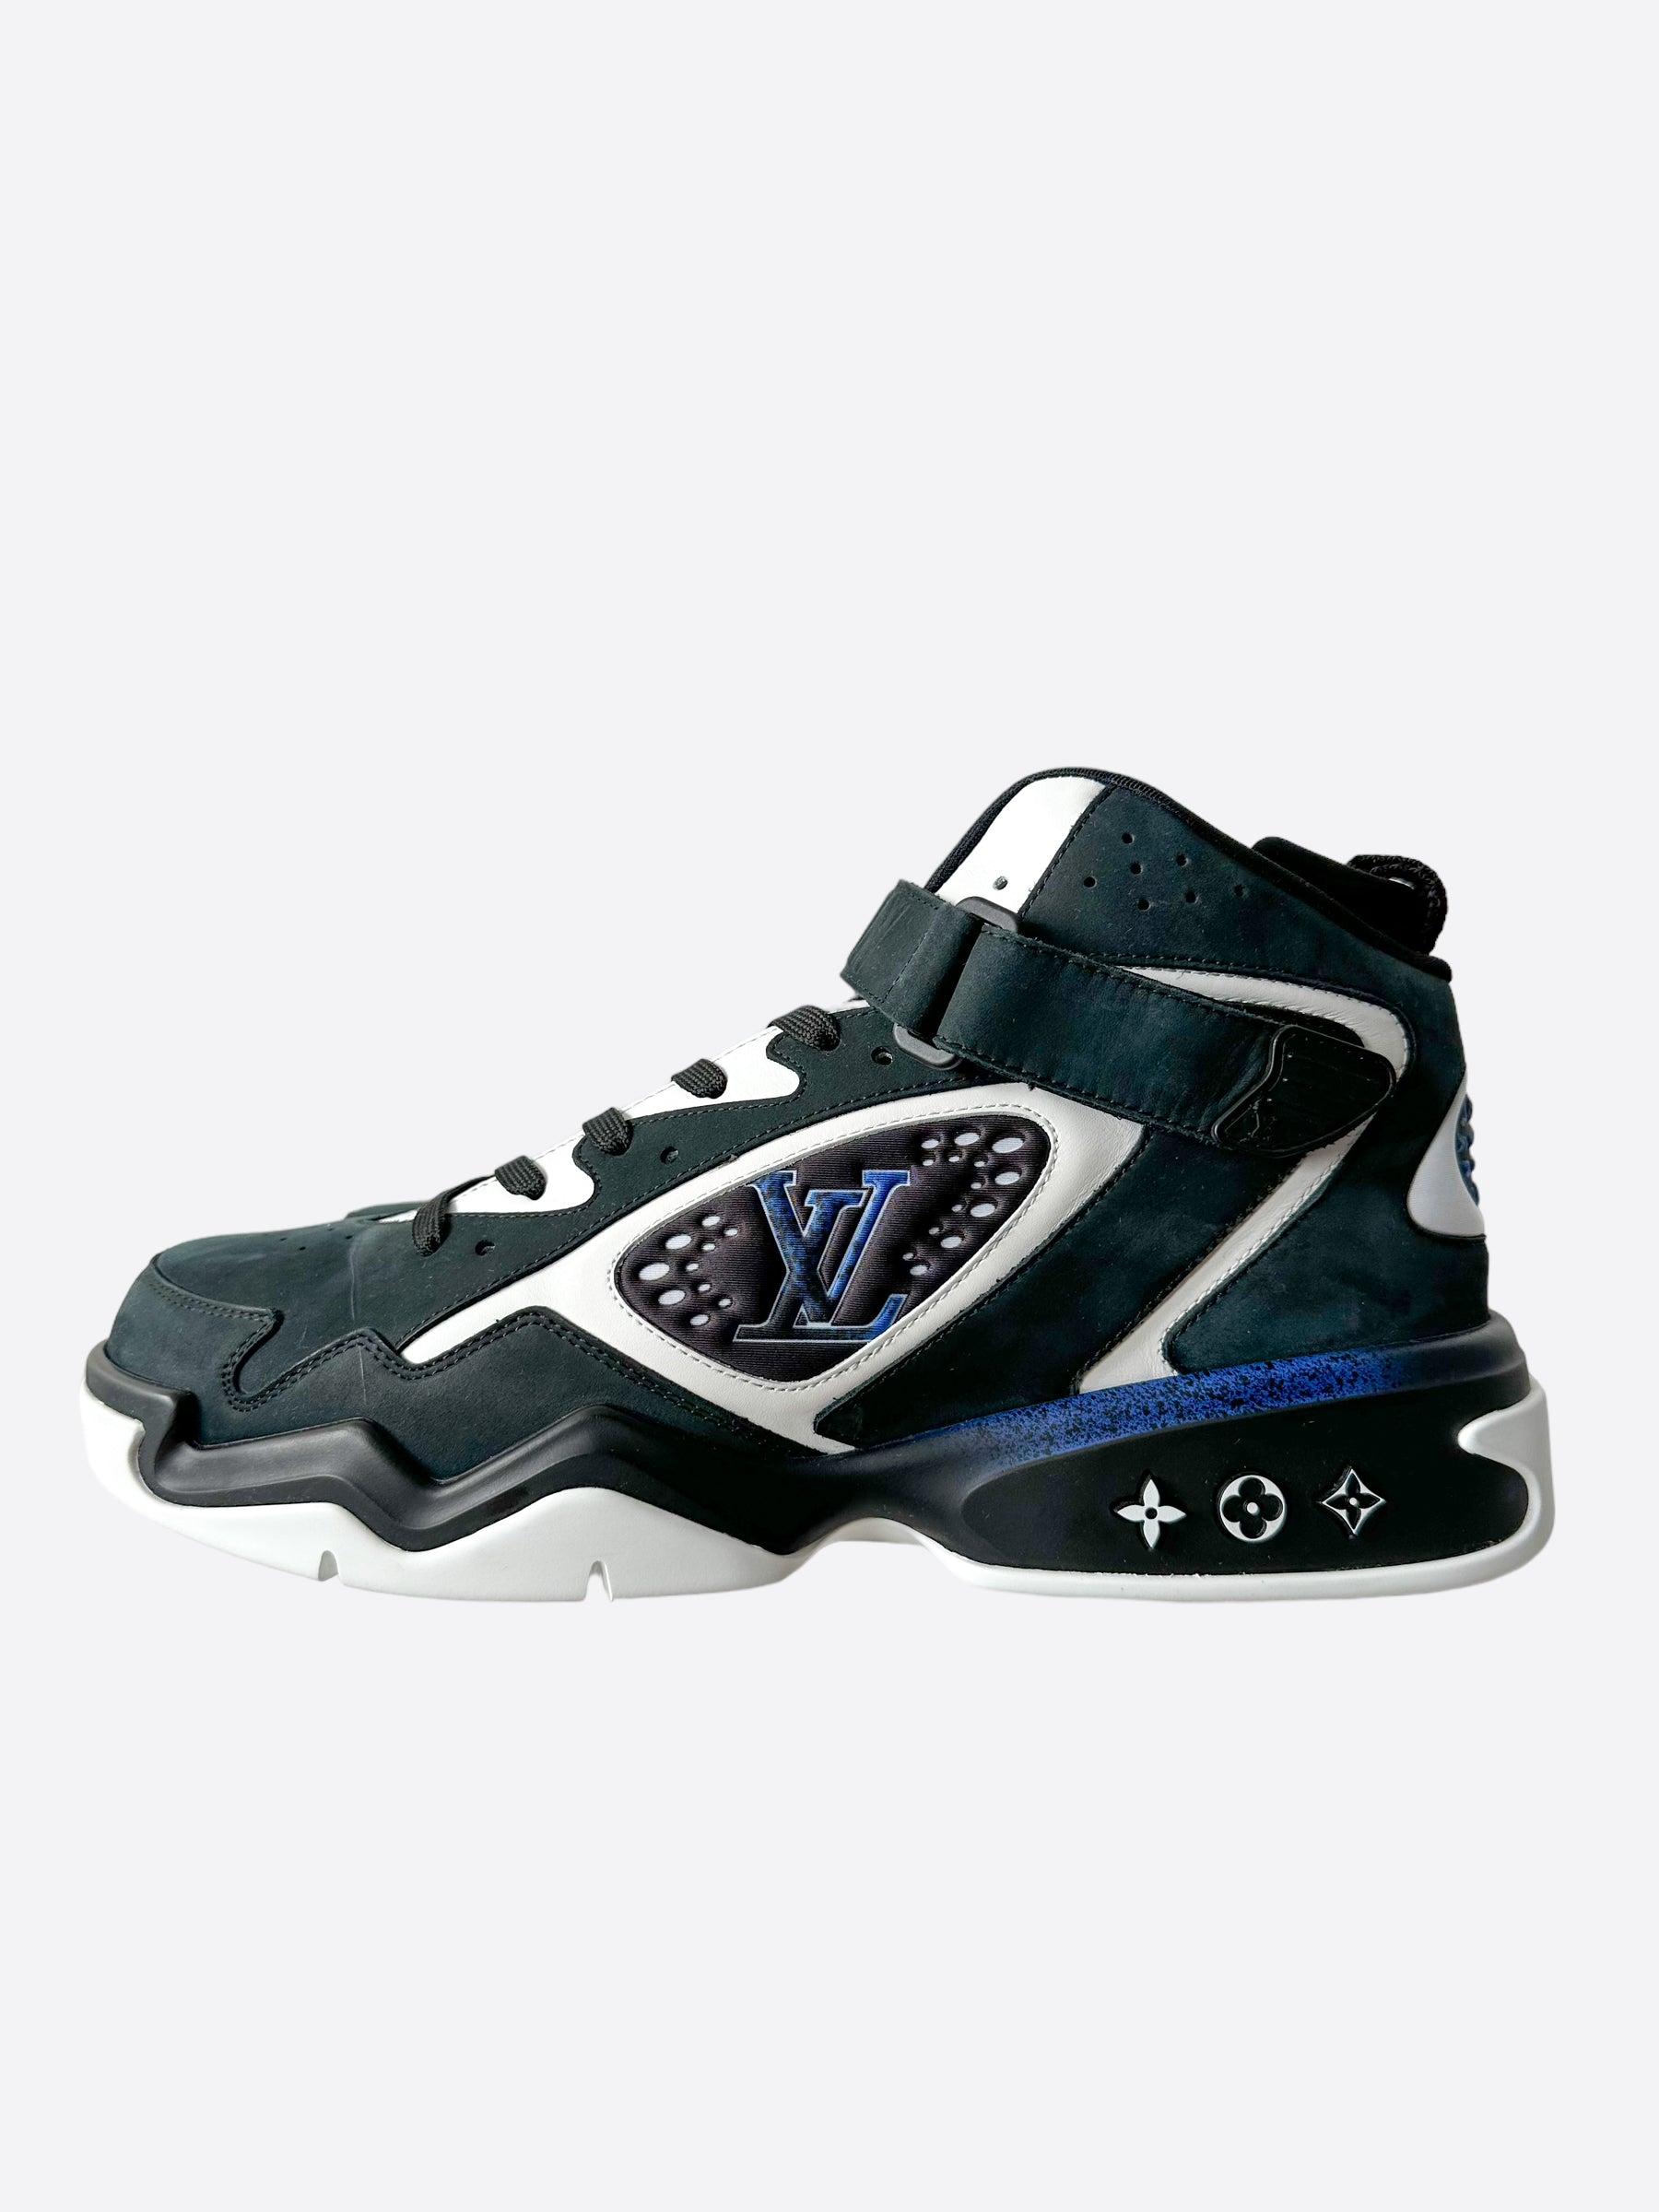 LOUIS VUITTON LV Trainer Sneaker Black. Size 11